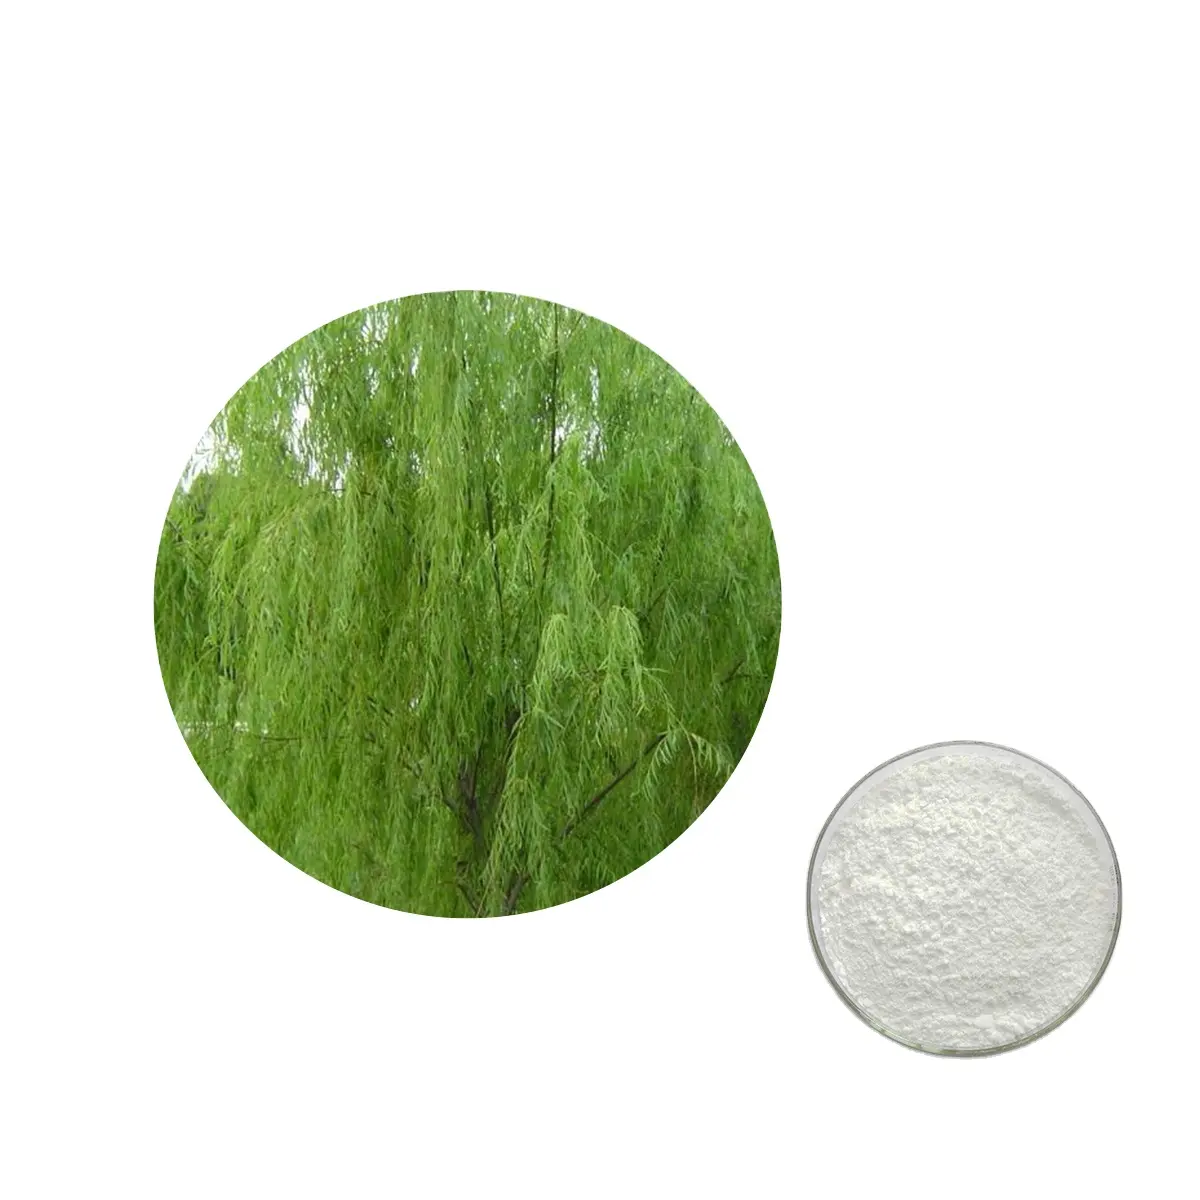 Alta calidad Salicin White Willow Bark 98% Extracto de Salicin